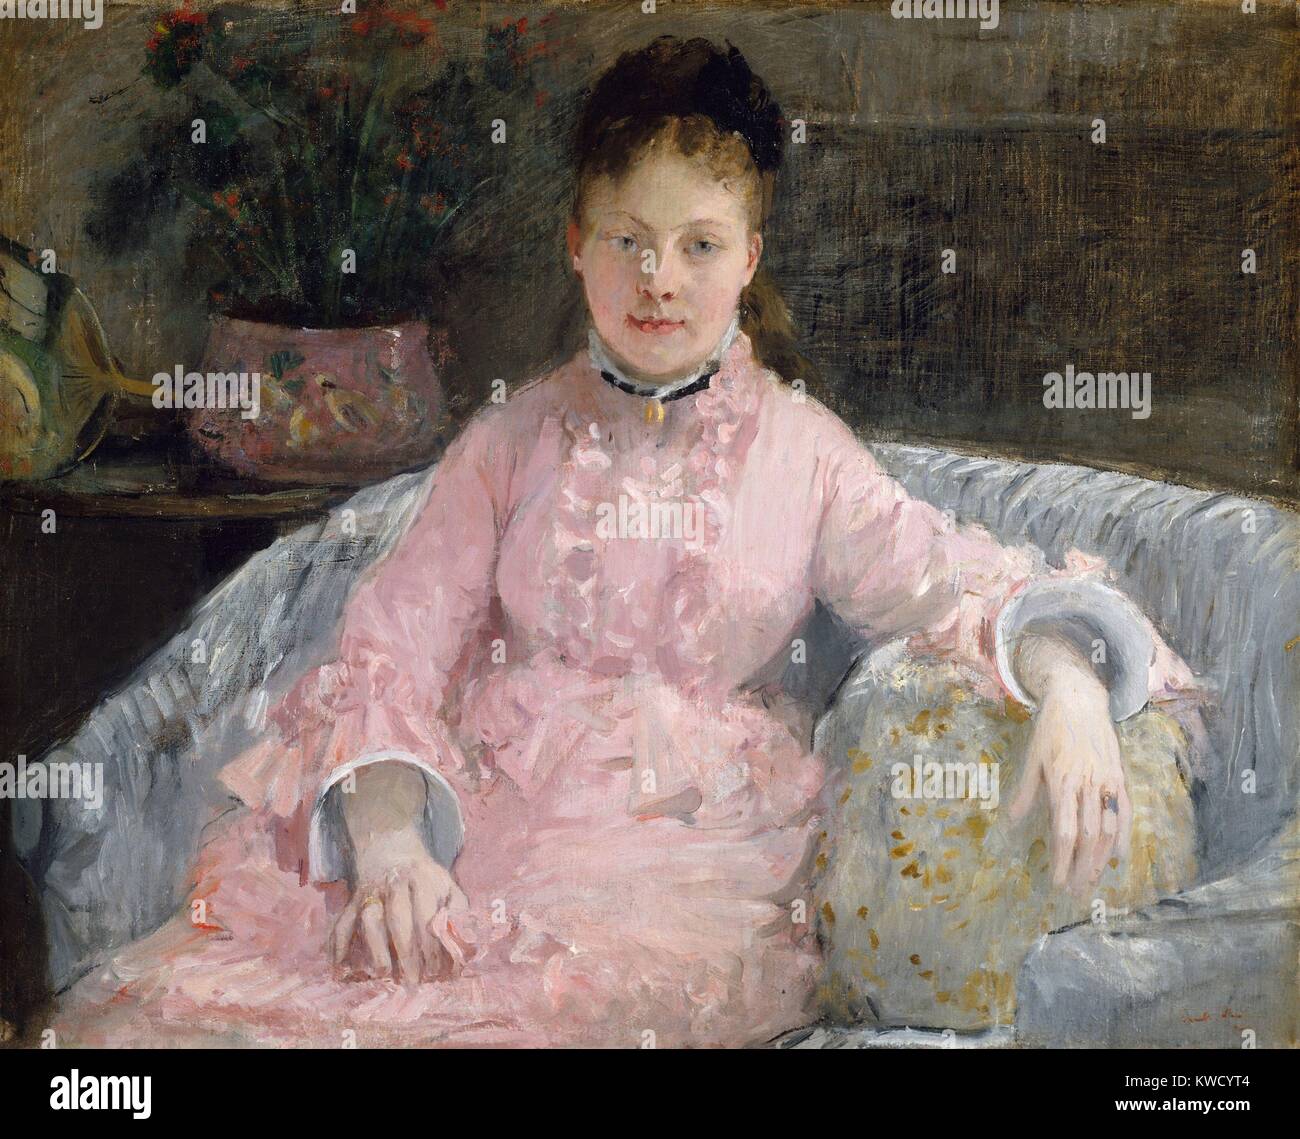 L'abito rosa, da Berthe Morisot, 1870, impressionista francese pittura, olio su tela. Morisot ha iniziato a studiare pittura all'età 16 ed è stato influenzato da Corot a dipingere paesaggi en plein air nei primi 1860s. Questa tela è stata dipinta con due anni nella sua amicizia artistica con Manet, quando ha adottato il stile impressionista (BSLOC 2017 3 125) Foto Stock